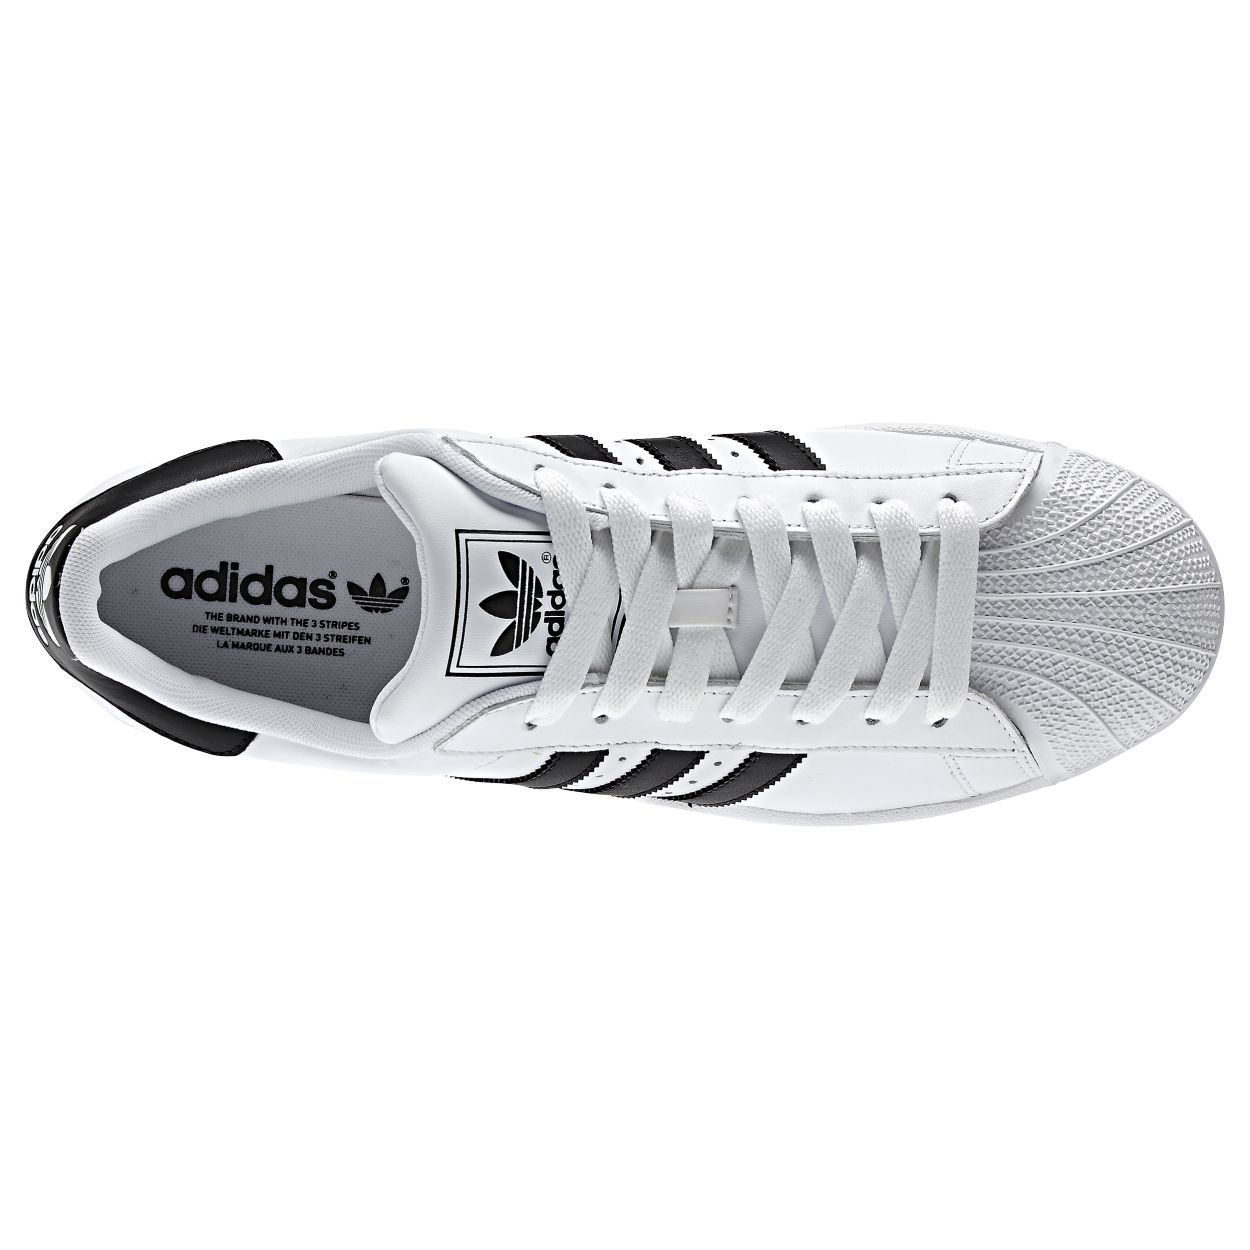 adidas Superstar II white  G17068